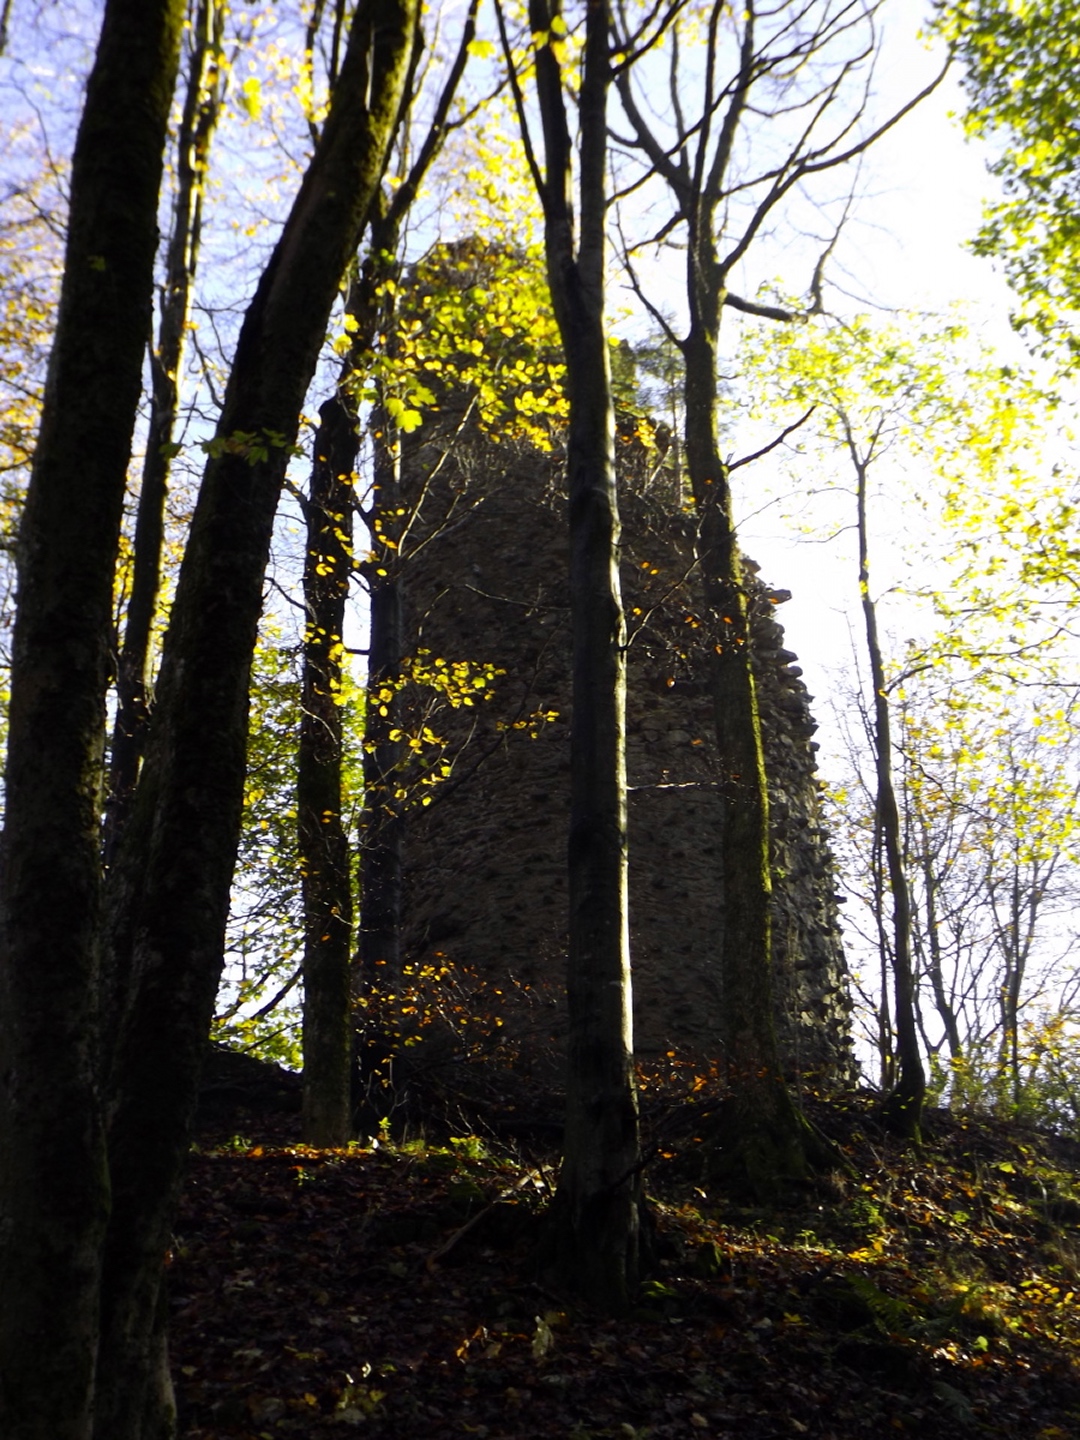 Ruine Reichenstein